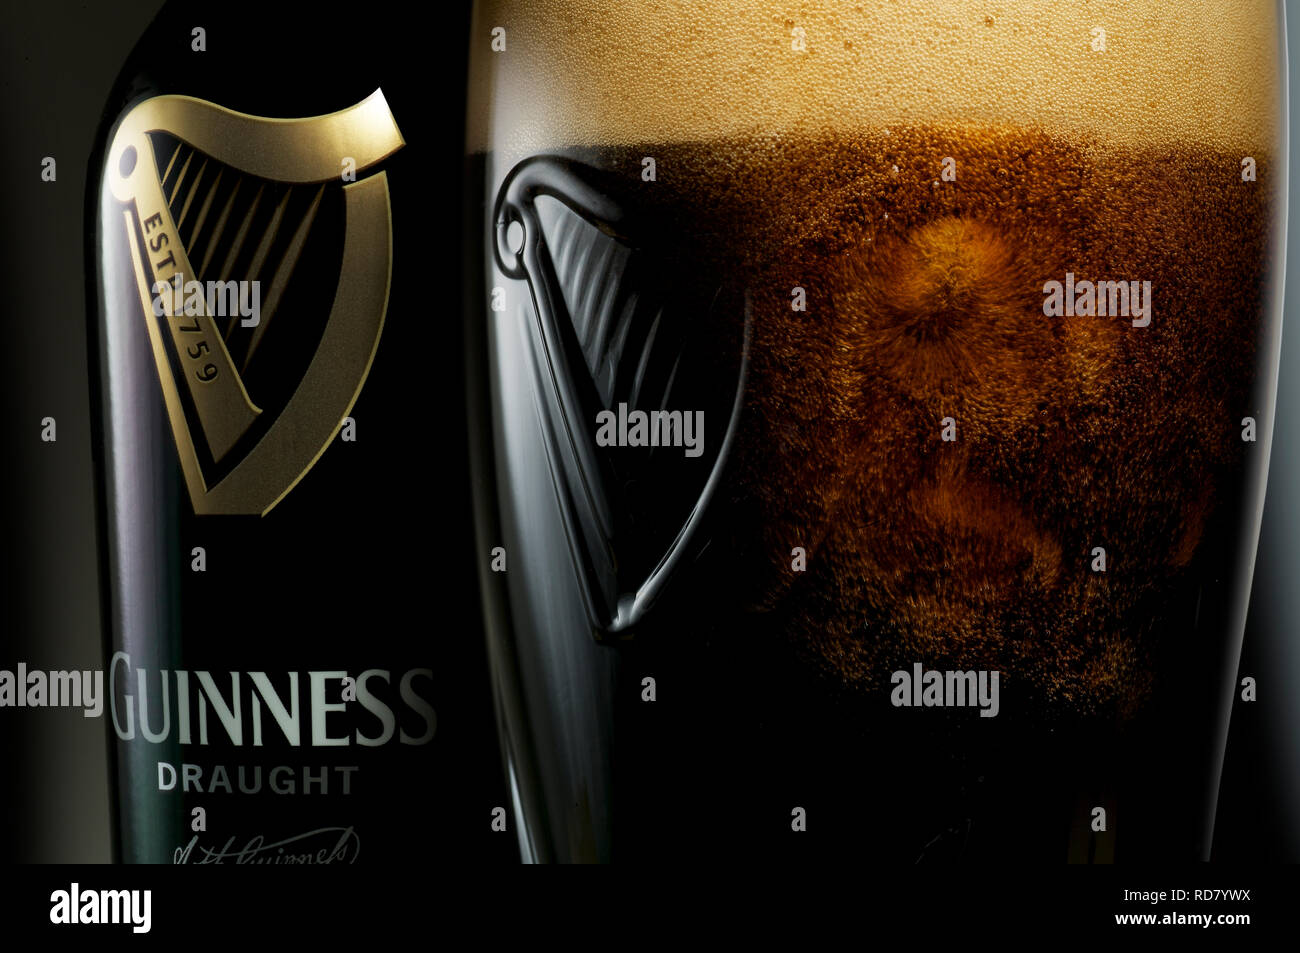 Chiudere l immagine di una pinta di Guinness con logo, studio shot Foto Stock